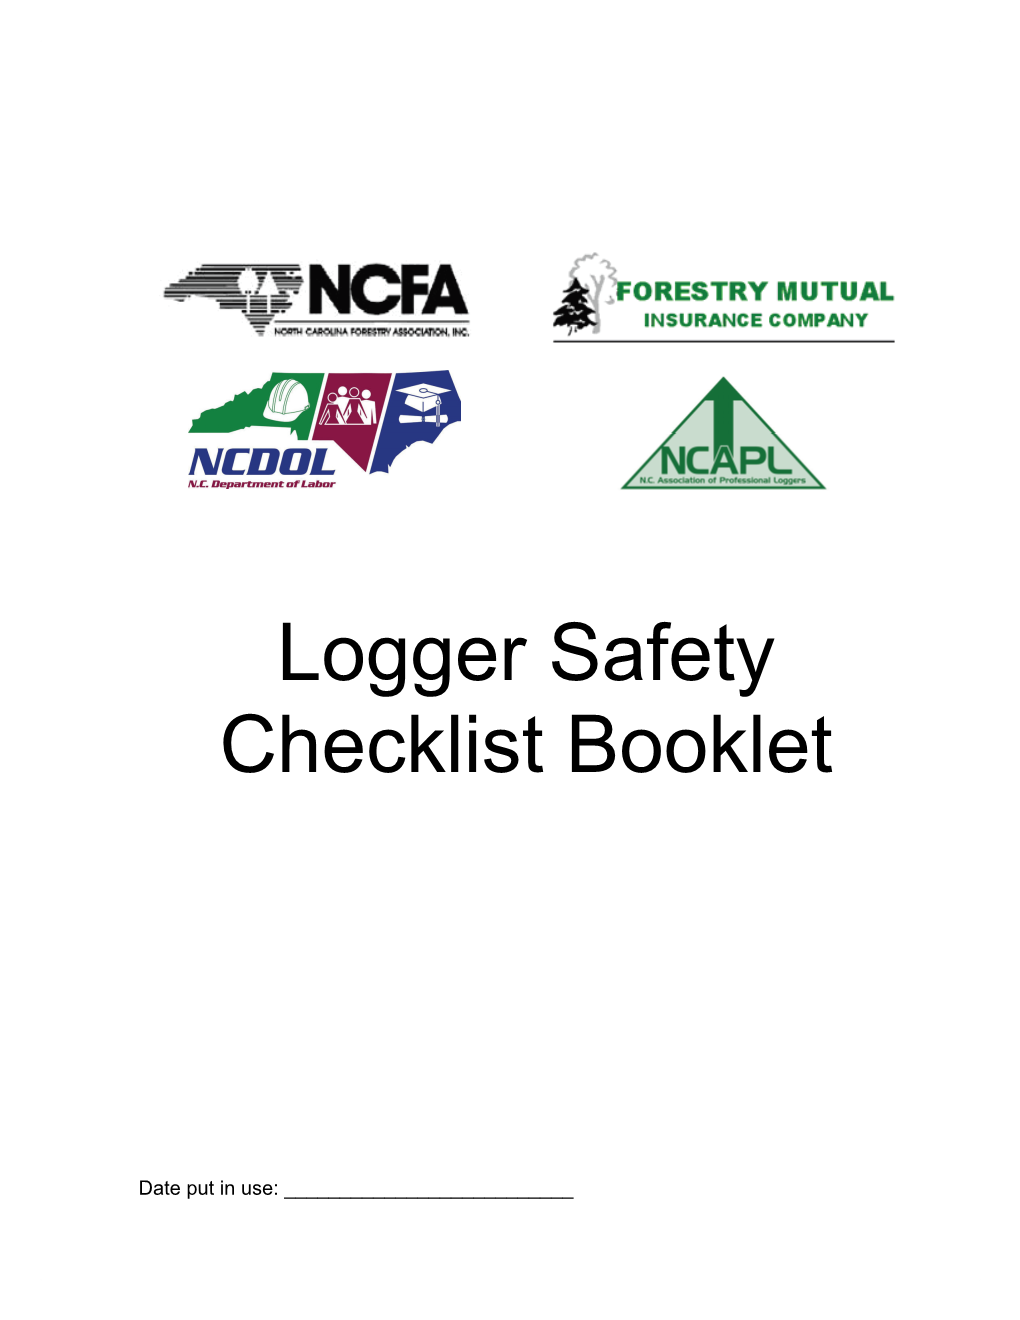 Logger Safety Checklist Booklet Order Form